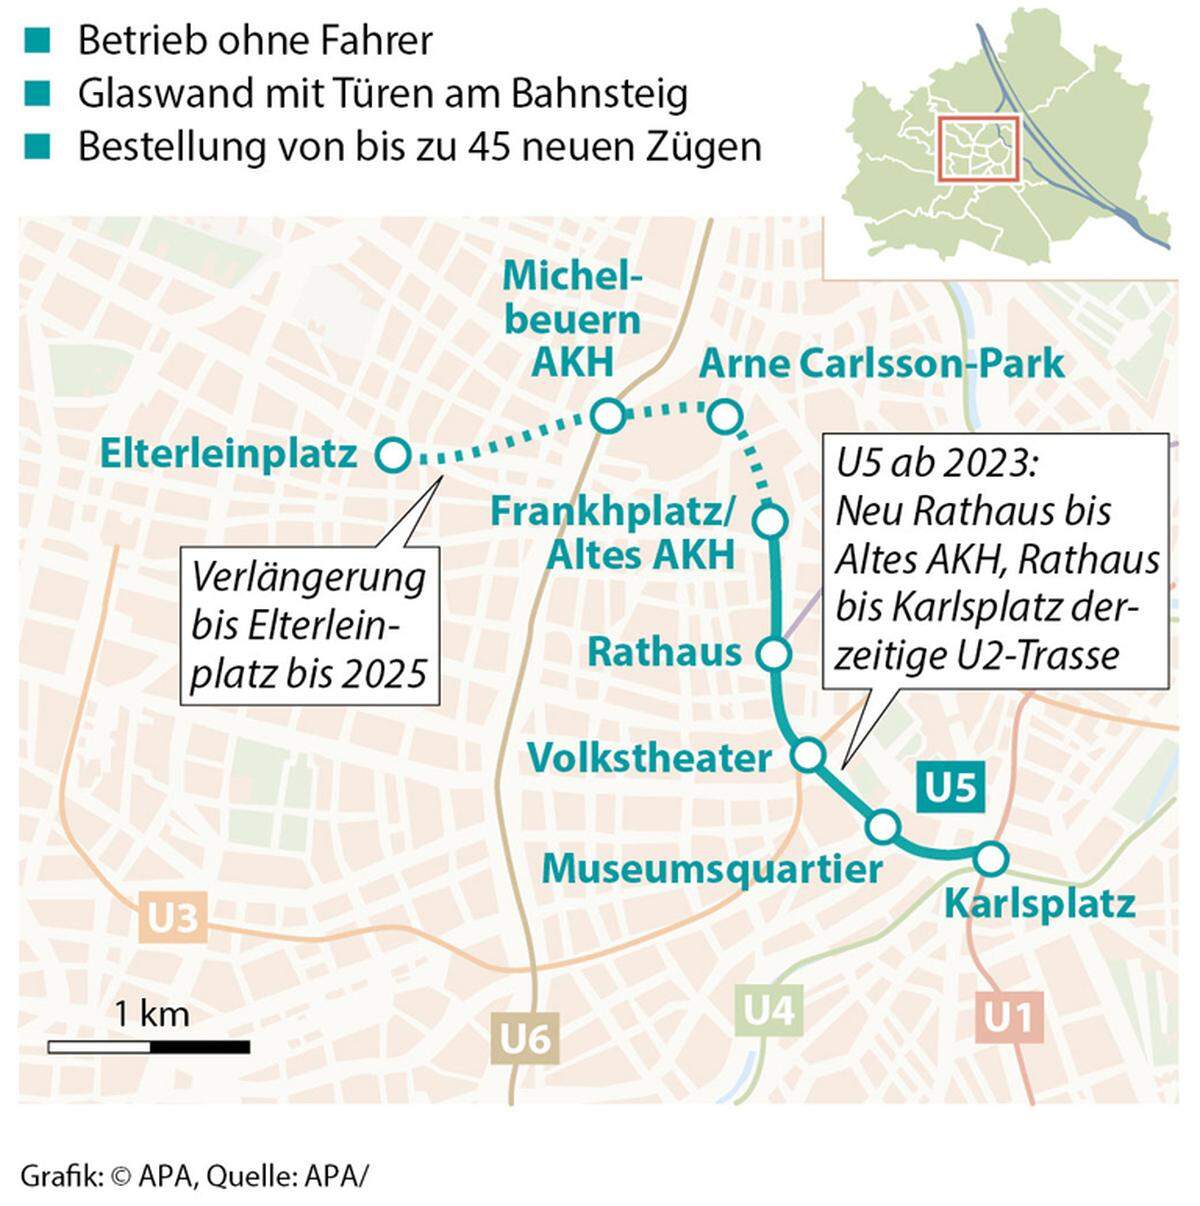 Die Station Frankhplatz / Altes AKH wird hingegen komplett neu gebaut. In den folgenden Jahren sollte die Linie dann bis zum Elterleinpatz fahren. Die Verhandlungen zur Finanzierung laufen noch.